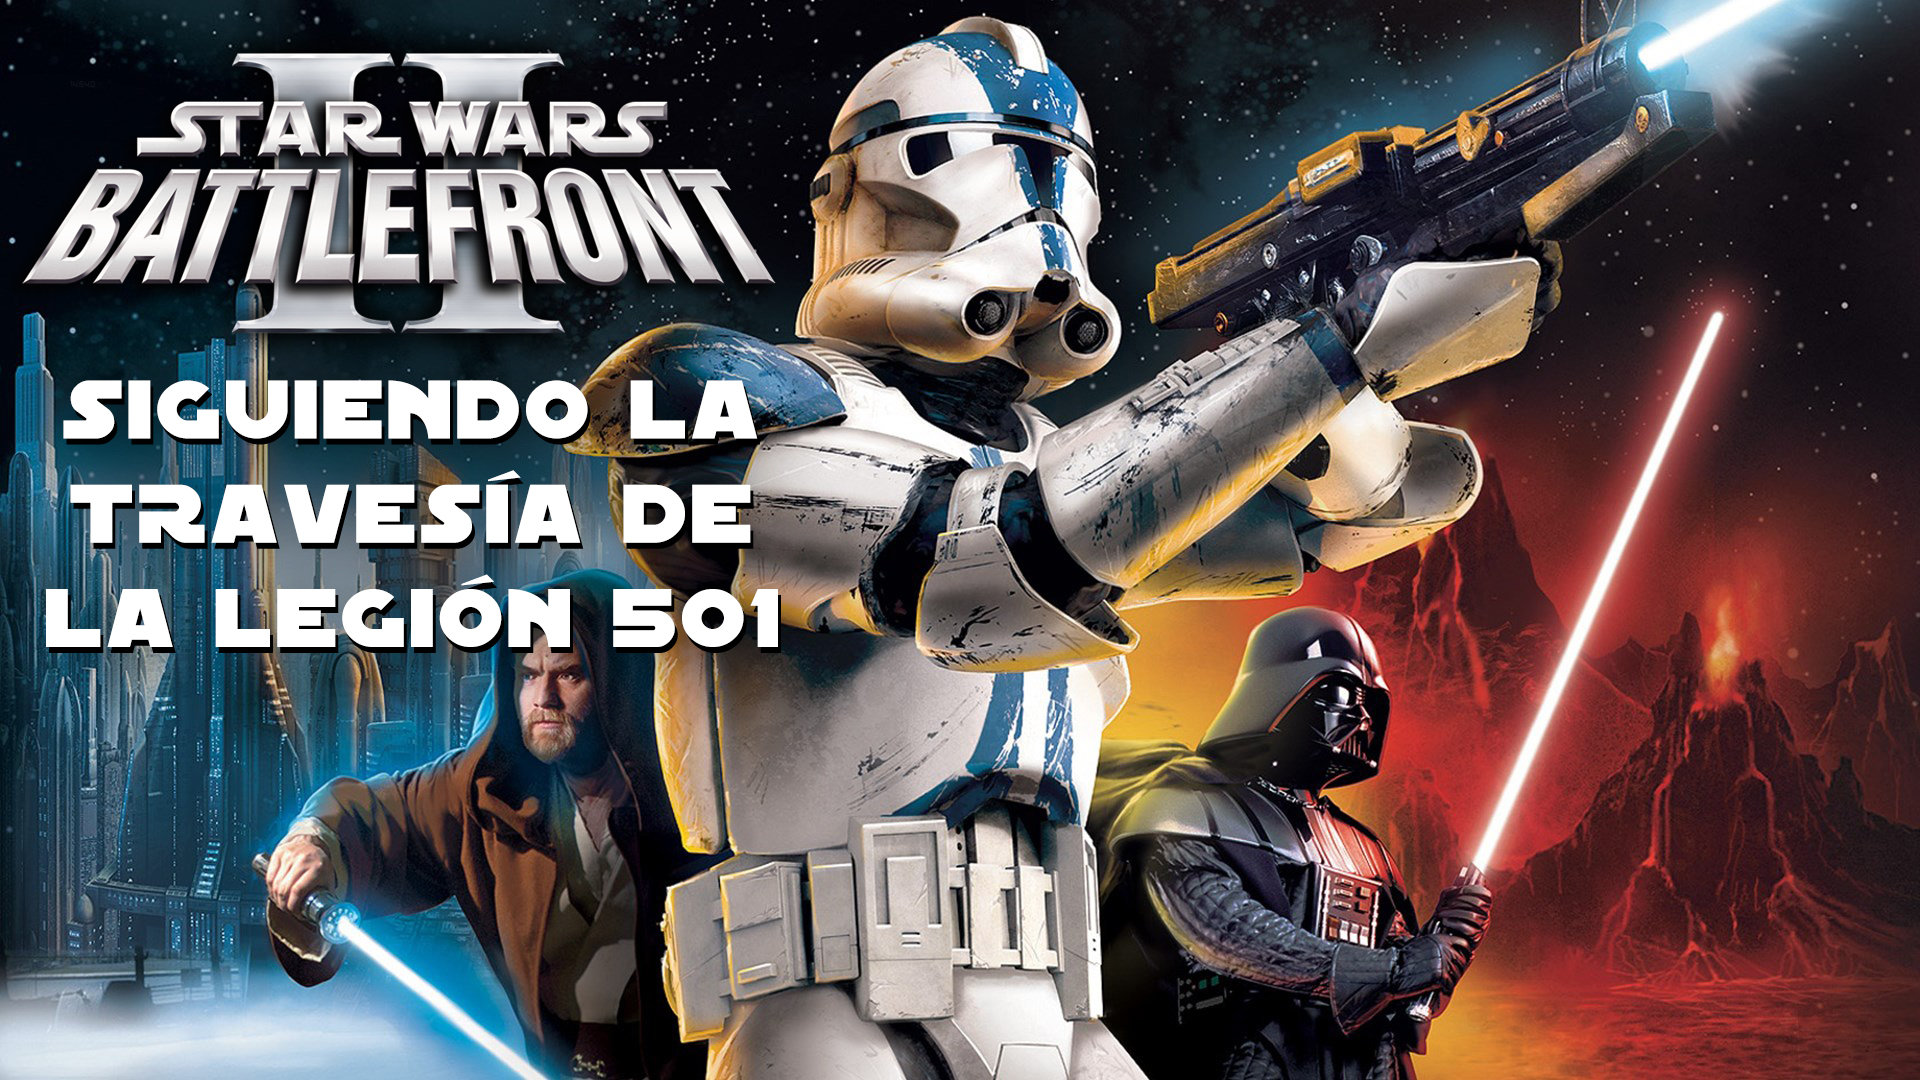 Star Wars: Battlefront 2 (2005, Clásico) – Siguiendo la travesía de la Legión 501